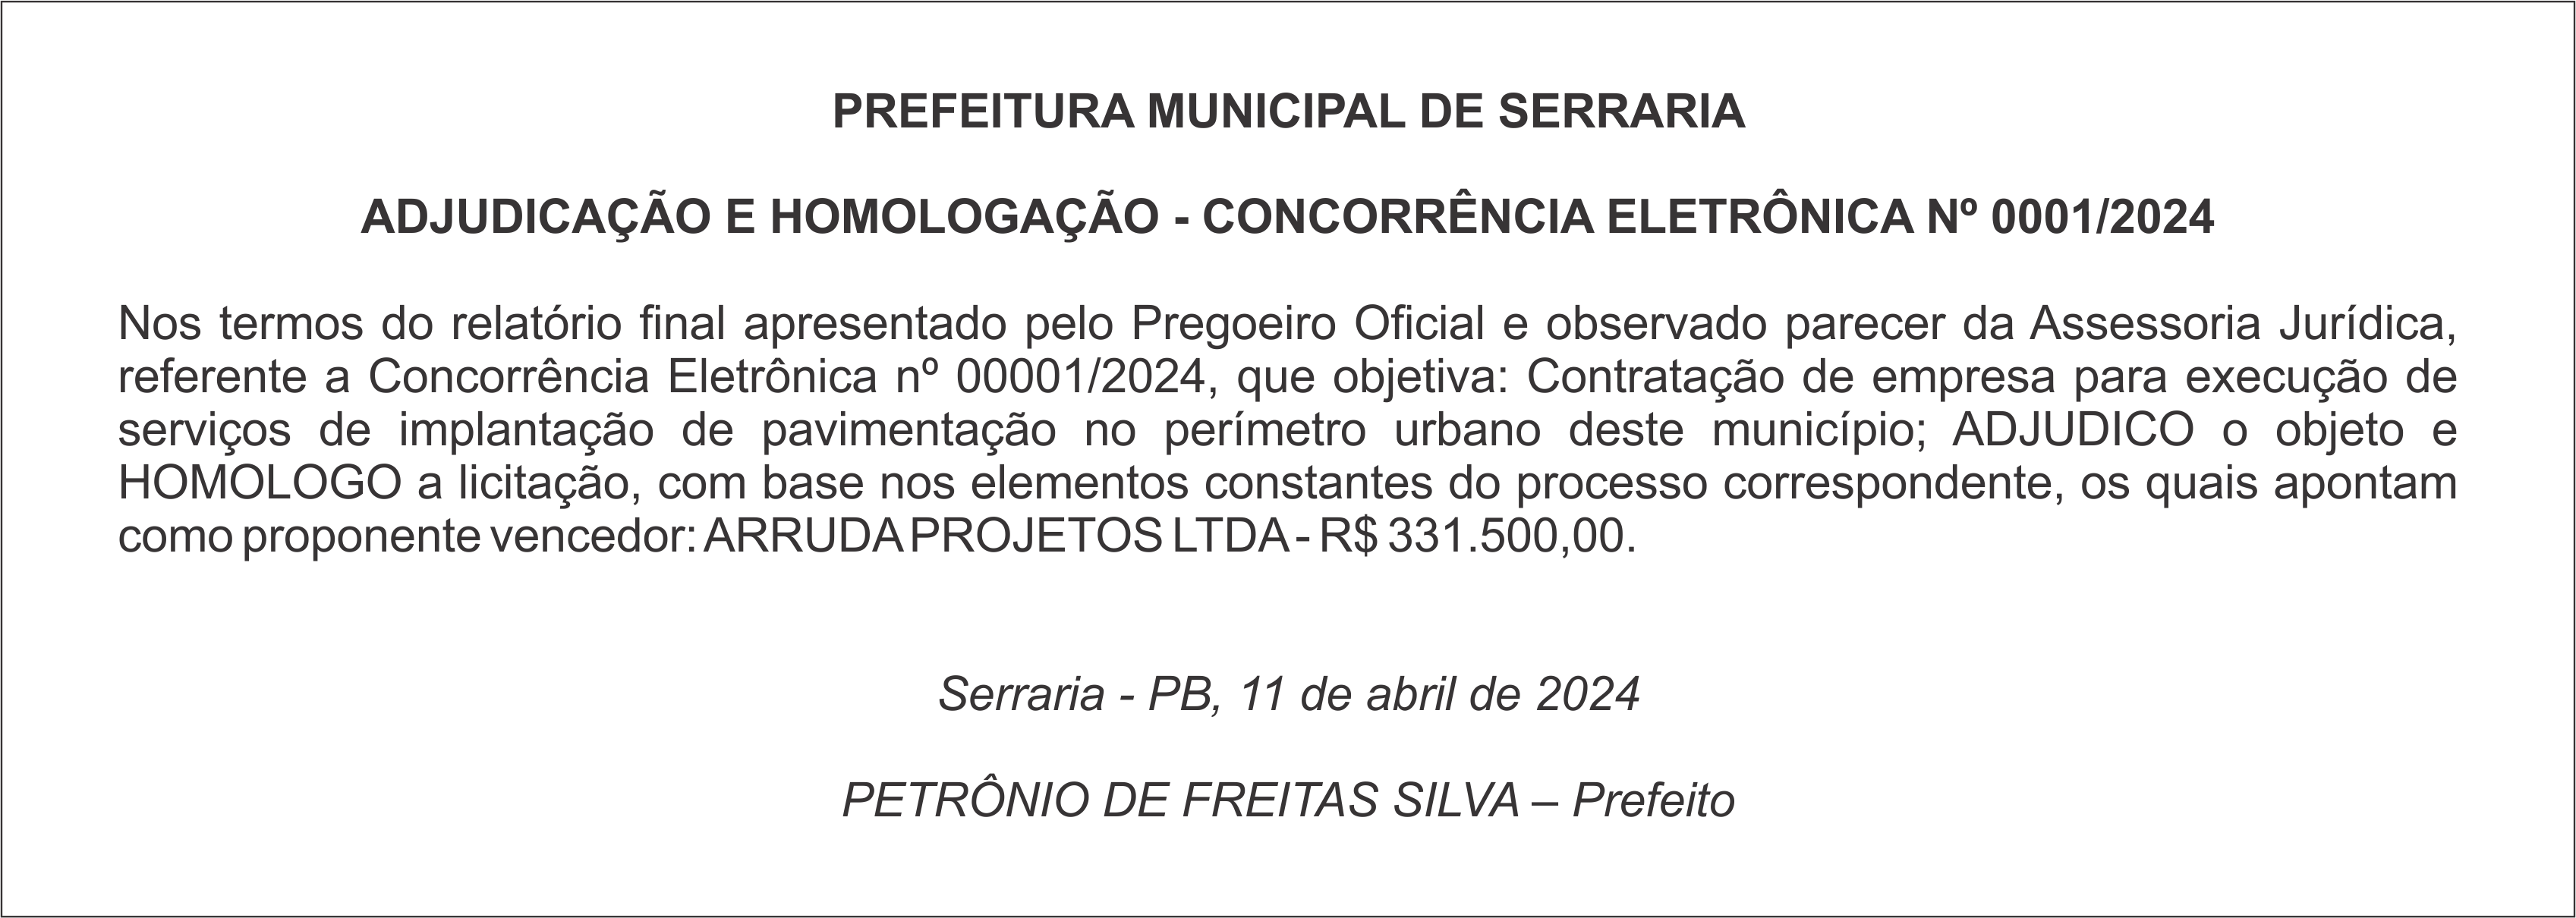 PREFEITURA MUNICIPAL DE SERRARIA – ADJUDICAÇÃO E HOMOLOGAÇÃO – CONCORRÊNCIA ELETRÔNICA Nº 0001/2024